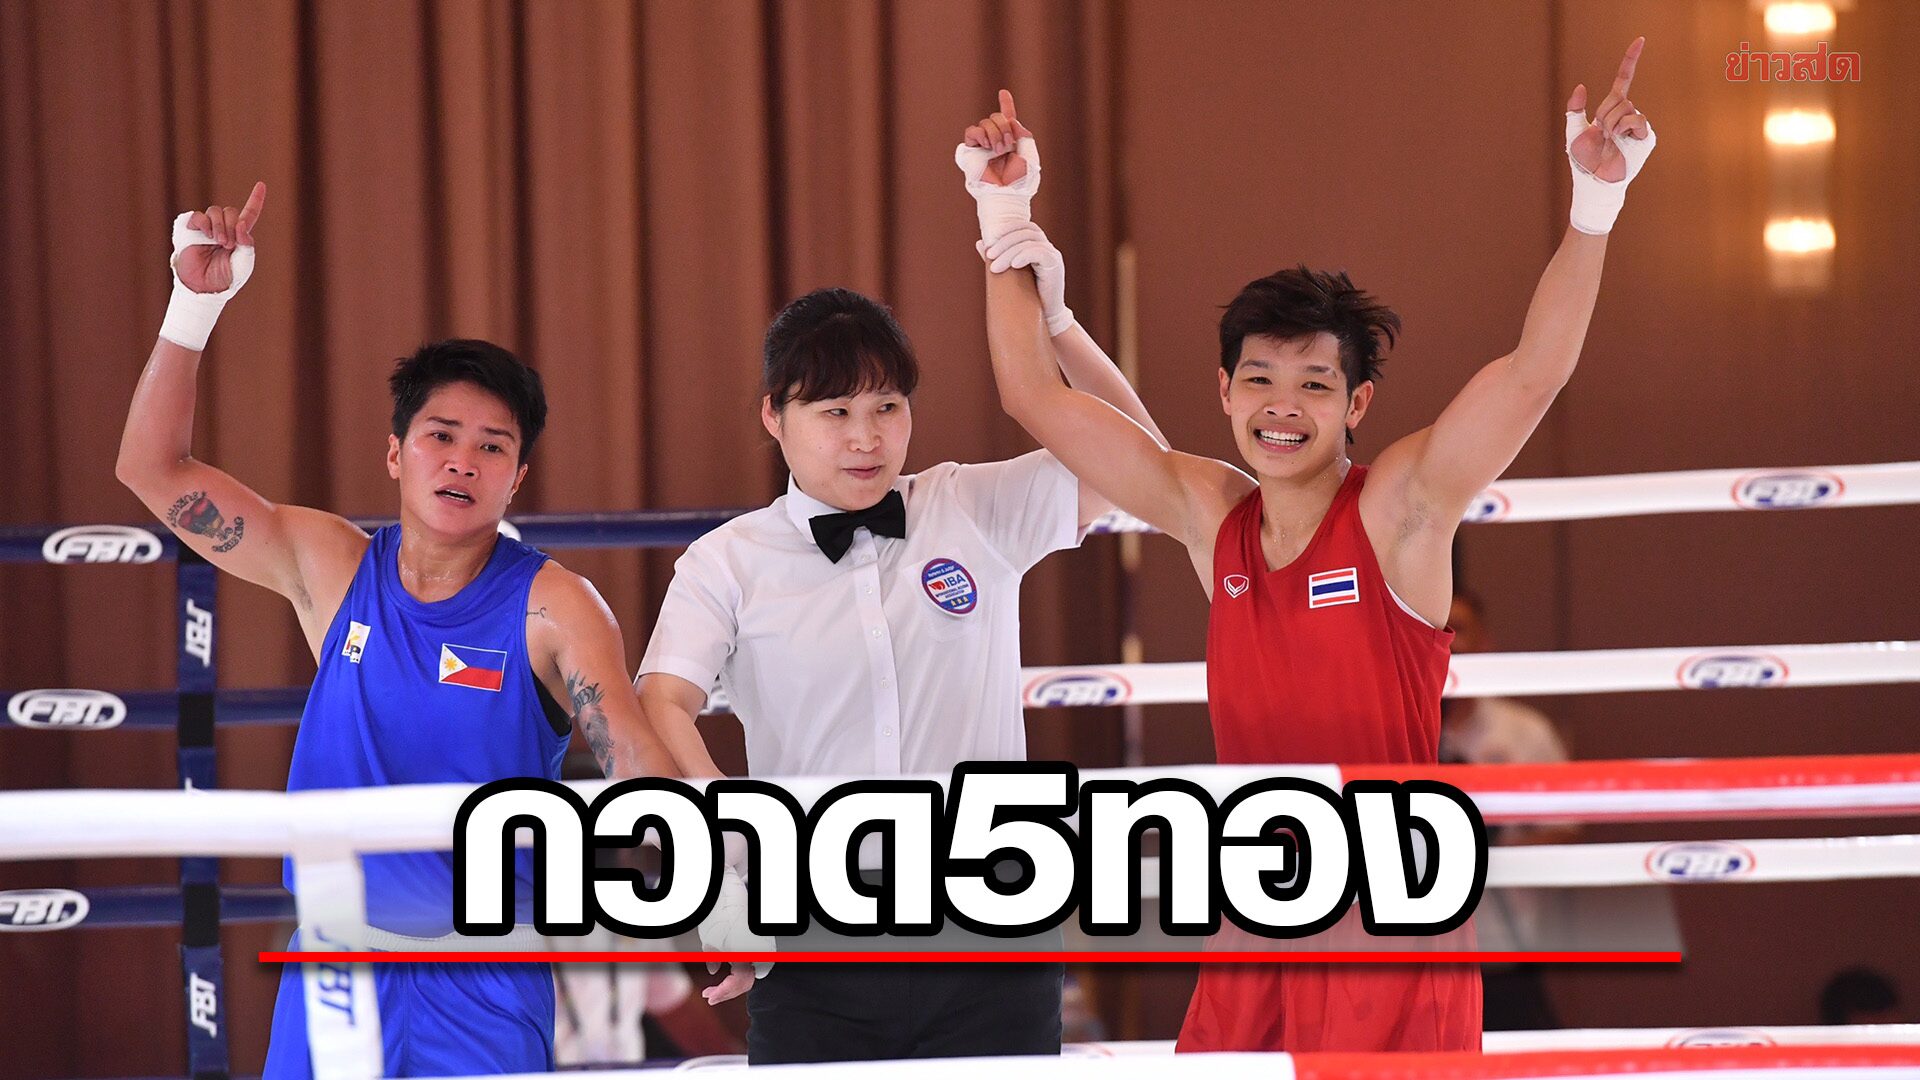 กำปั้นไทย ชิงวันแรกกวาดแล้ว 5 ทองซีเกมส์ – มั่นใจเหมาอีก 5 แชมป์ที่เหลือ